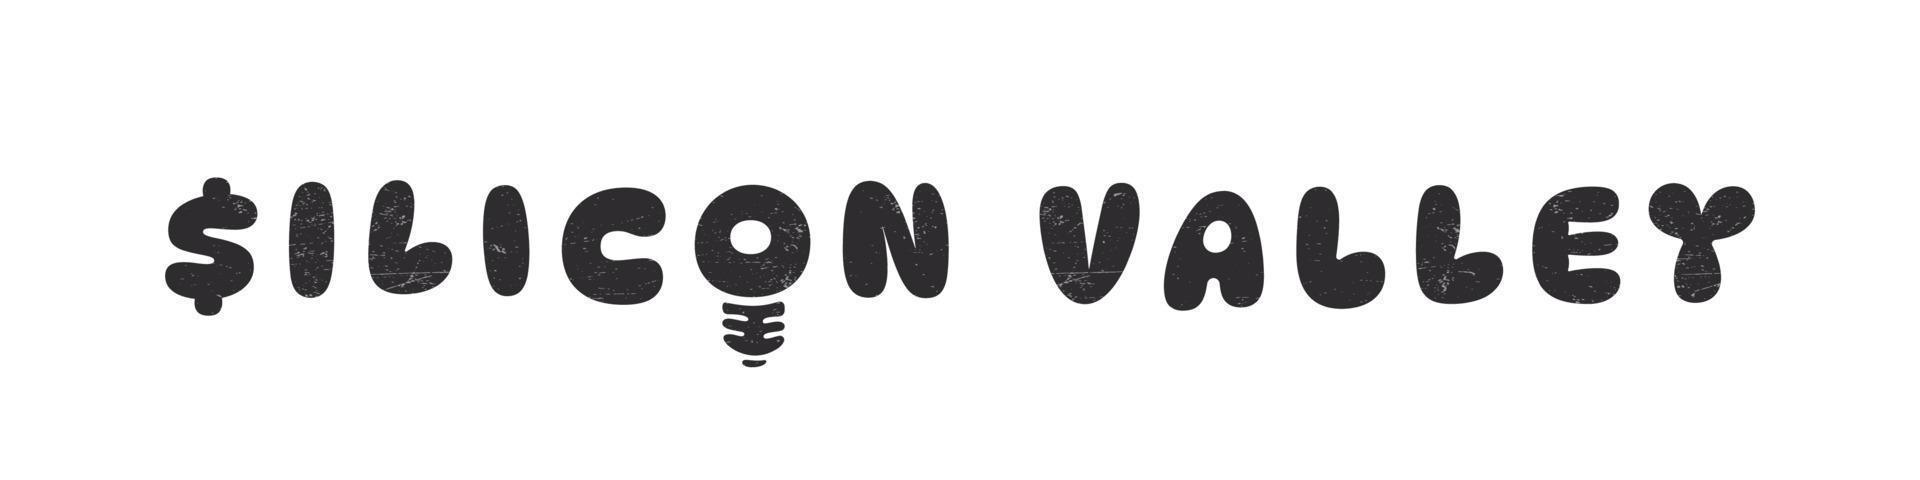 Silicon Valley, Kalifornien. Inschrift mit Grunge-Effekten. gezeichneter Text. Vektor-Illustration vektor